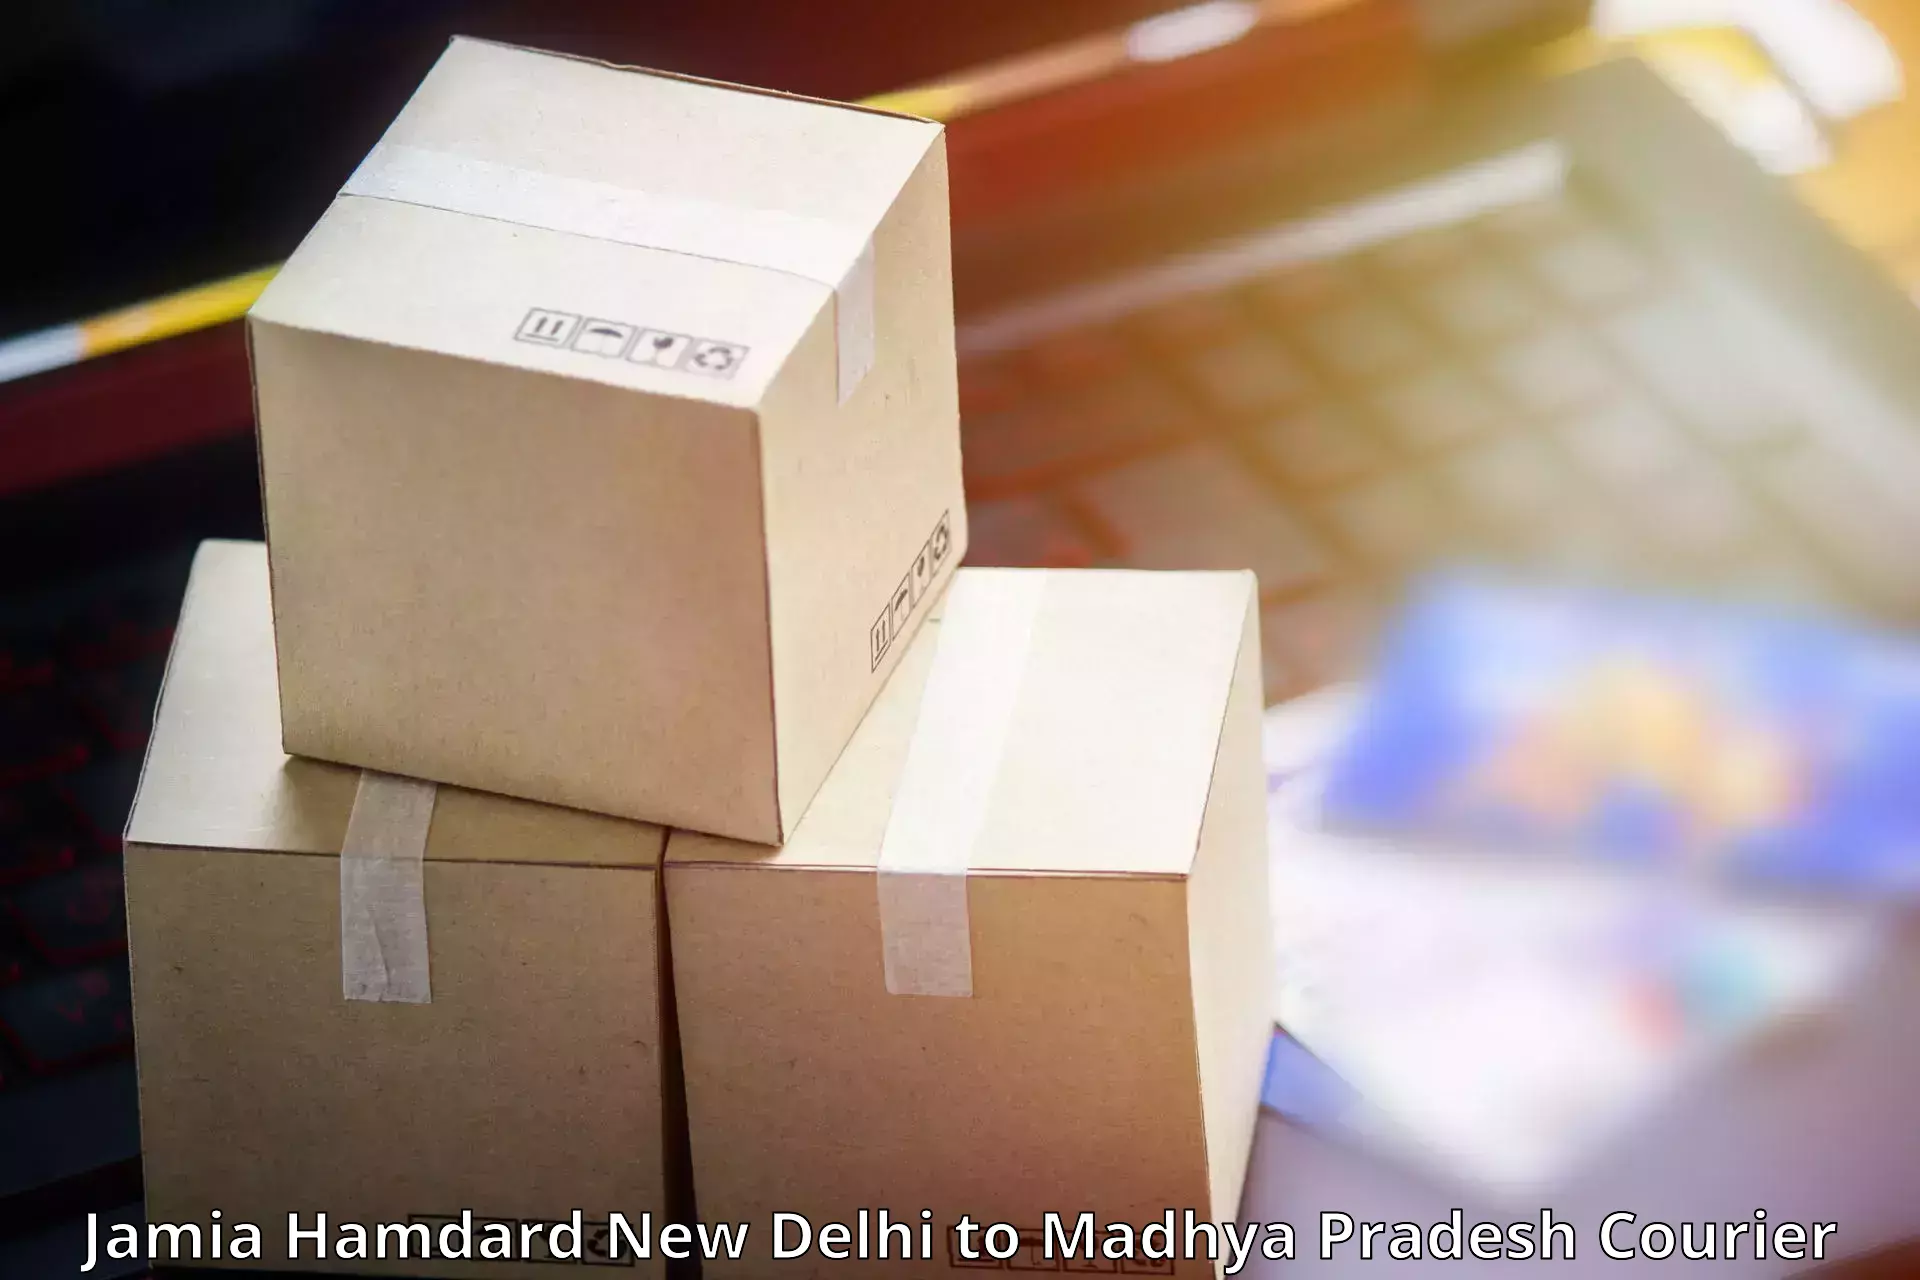 Domestic courier Jamia Hamdard New Delhi to Chanderi